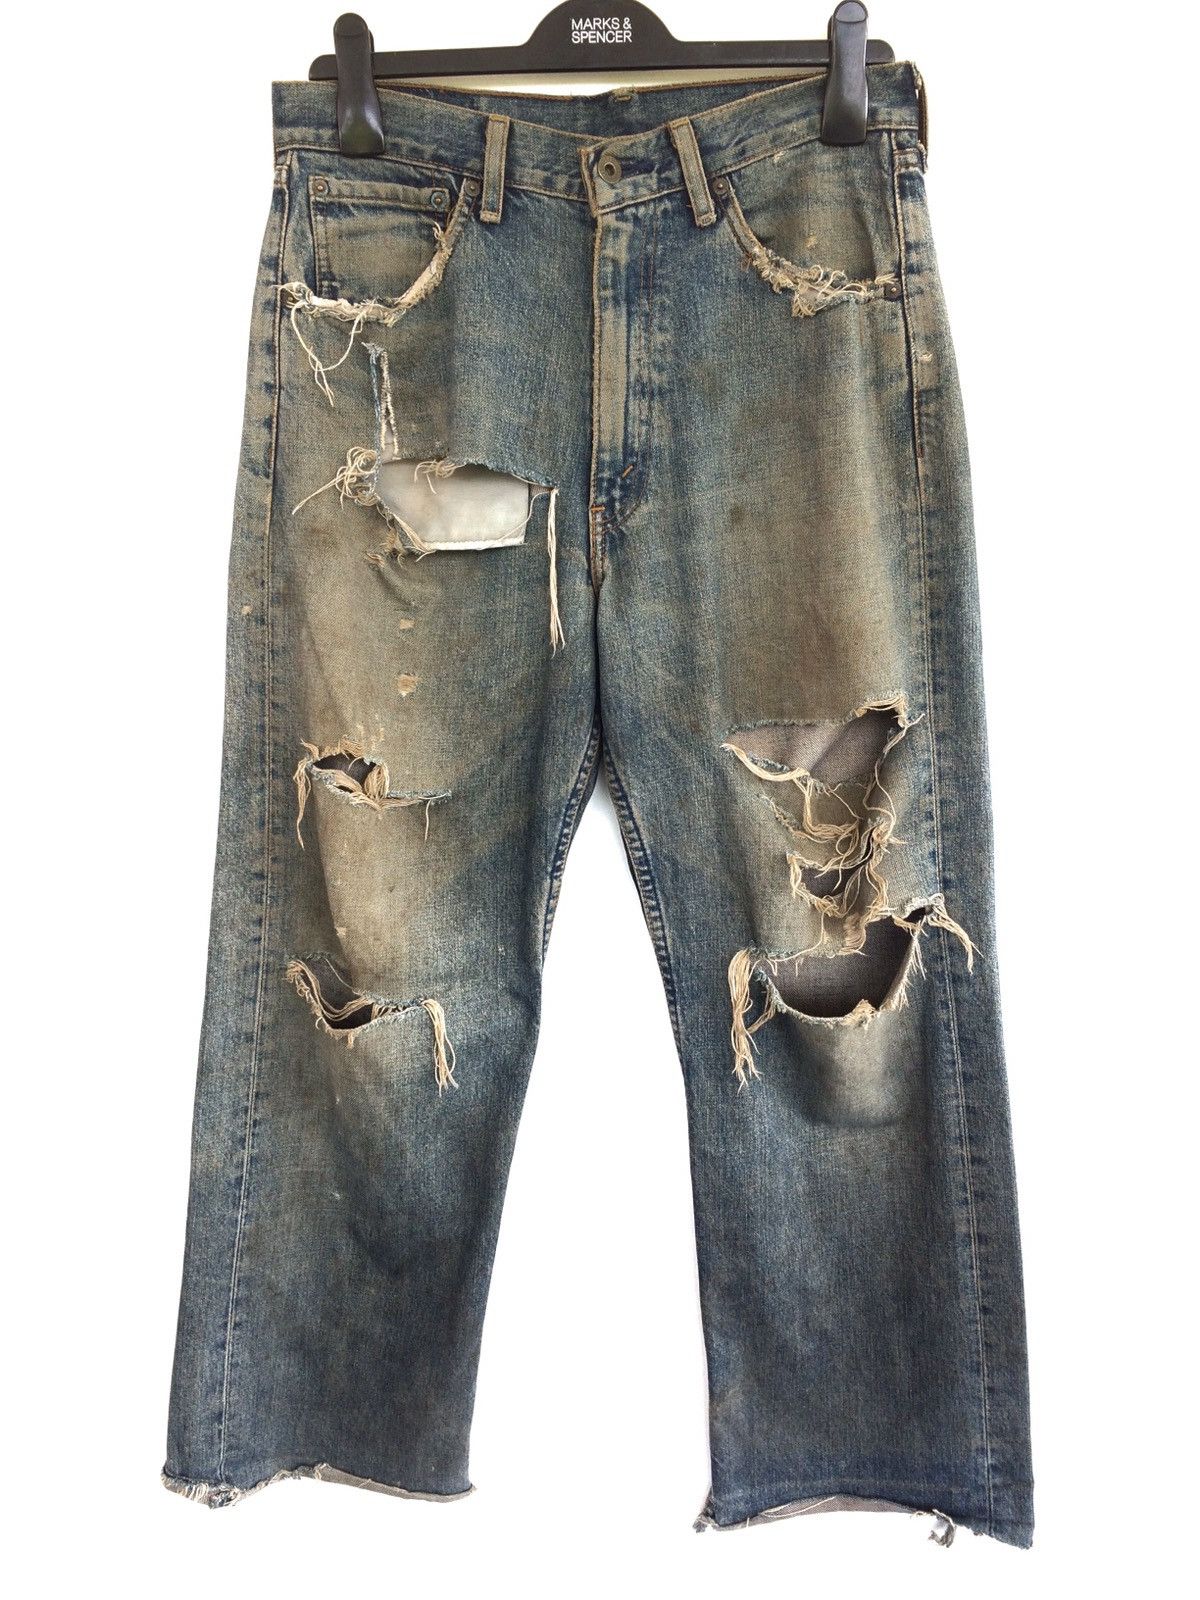 Vintage Levis Distressed Kurt Cobain Fashion Style Denim Pant Size US 31 - 1 Preview